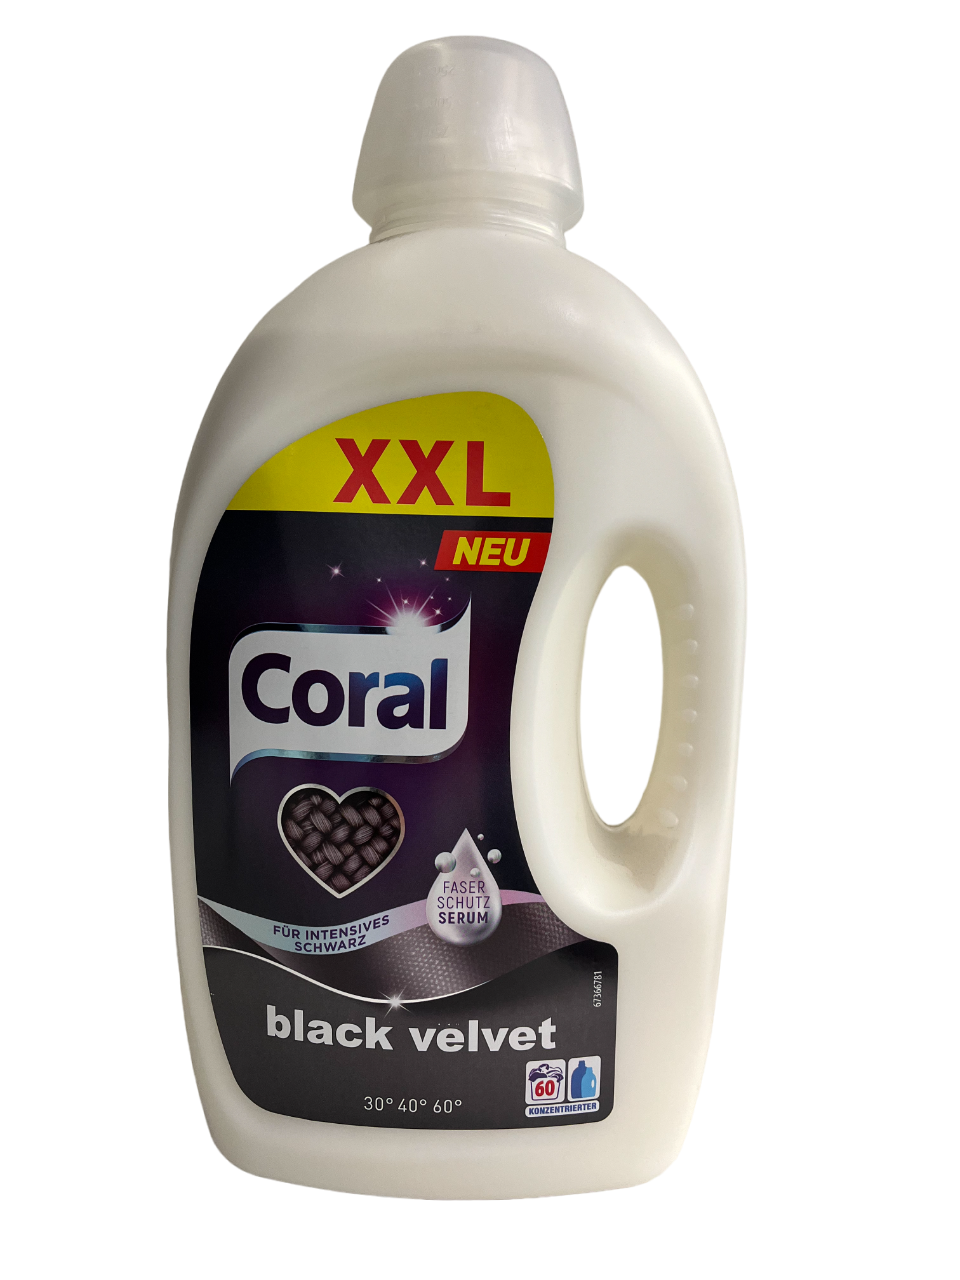 Coral Black Velvet Flüssigwaschmittel 60 WL 3 Liter